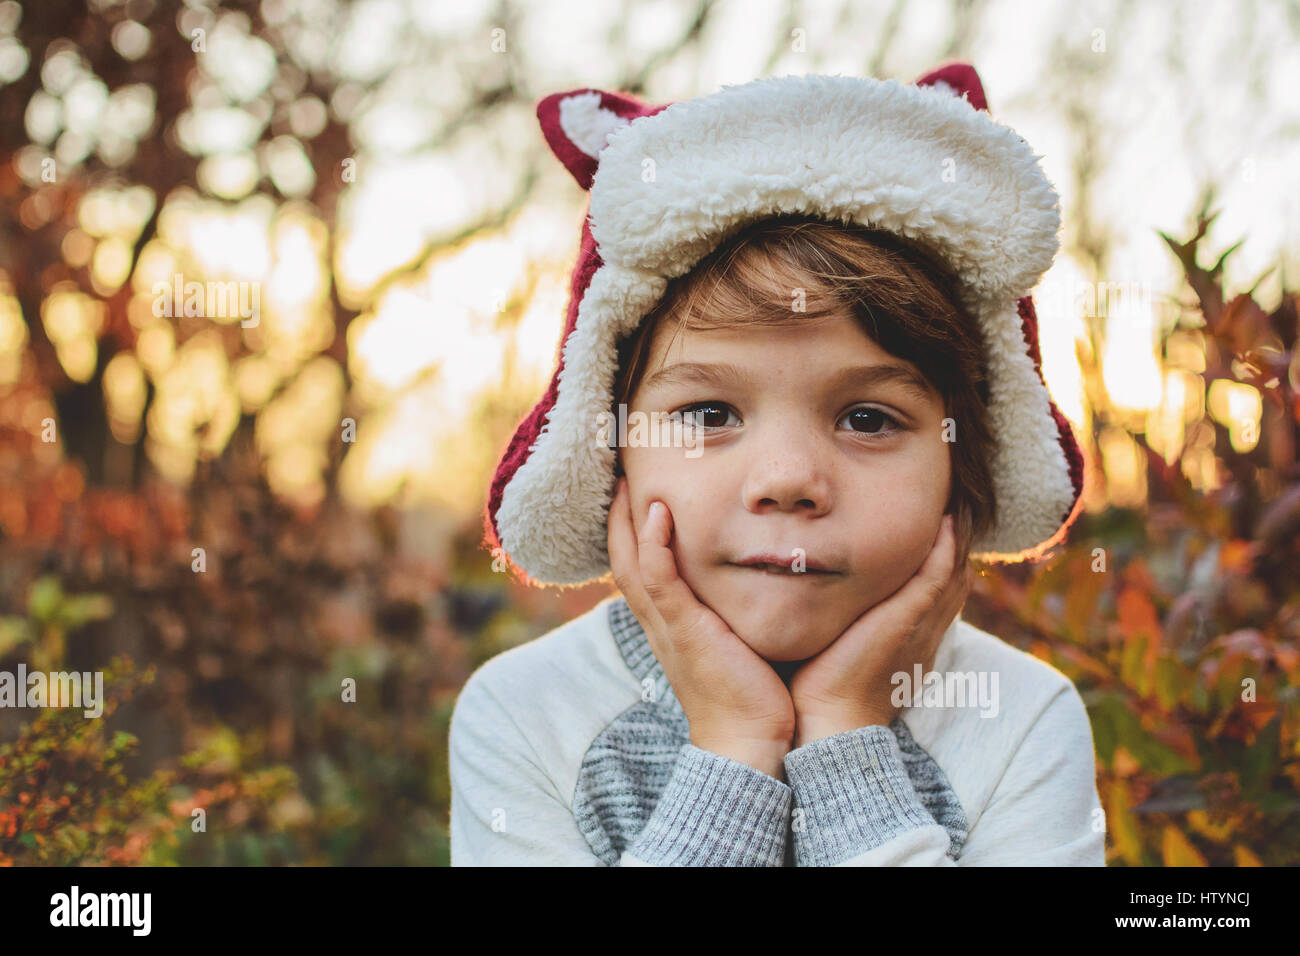 Portrait of a boy wearing a winter hat Stock Photo